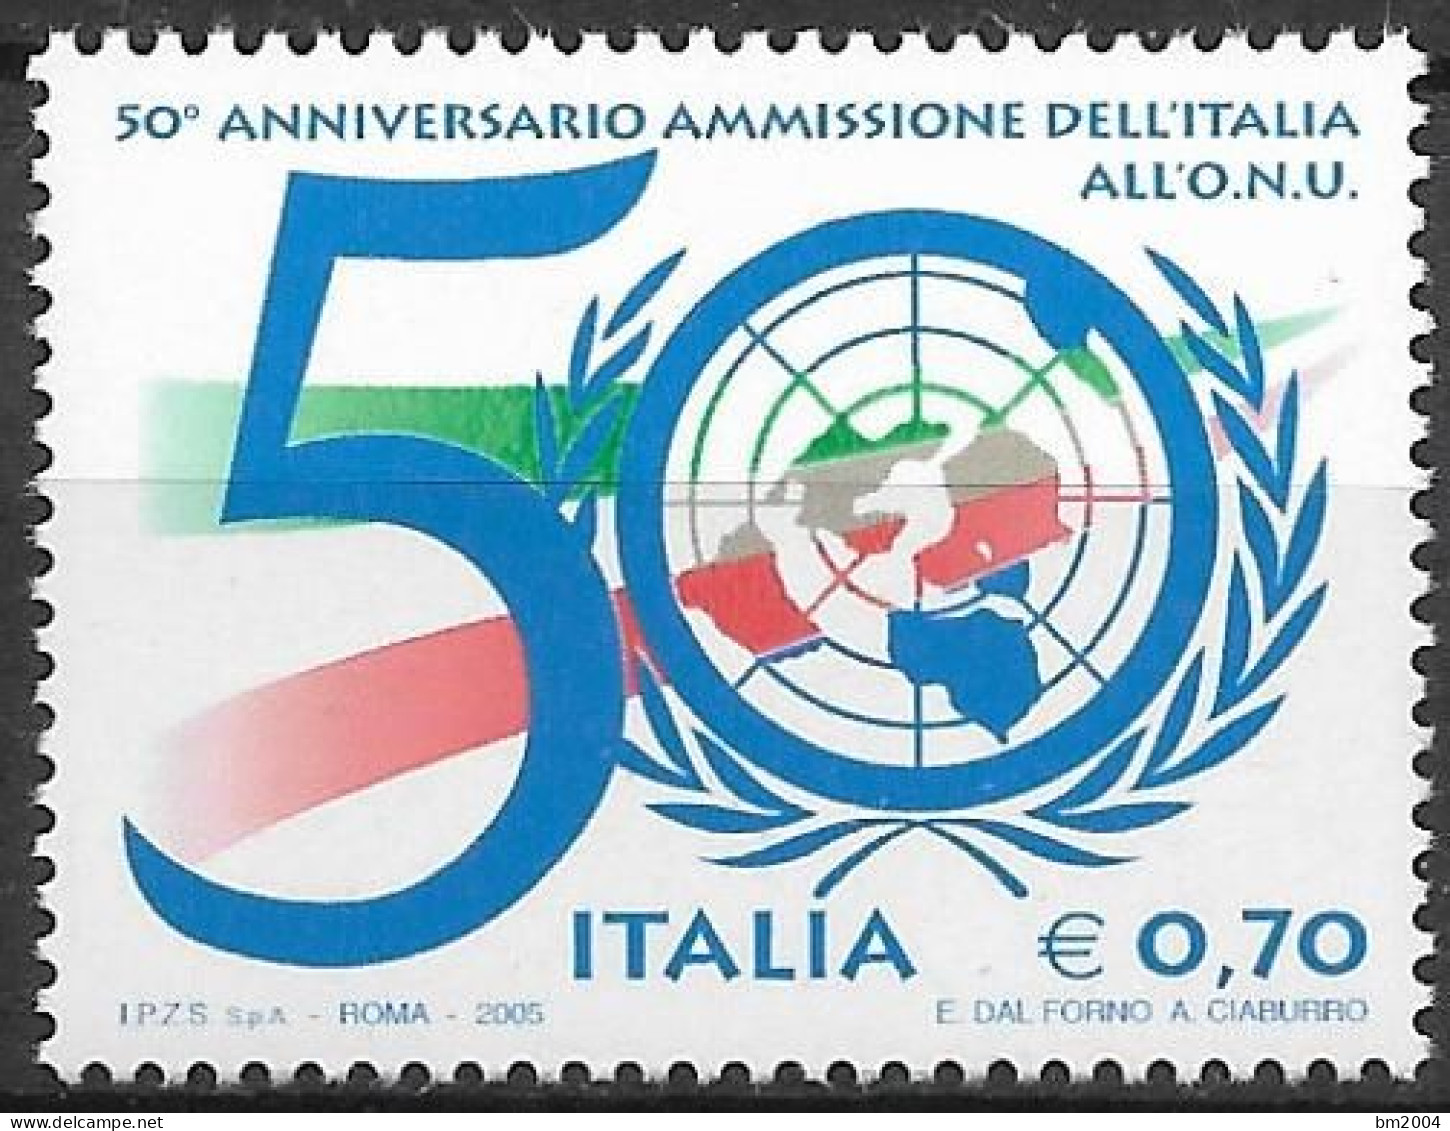 2005  Italien  Mi. 3068**MNH   50. Jahrestag Der Aufnahme Italiens In Die Vereinten Nationen (UNO). - 2001-10:  Nuevos